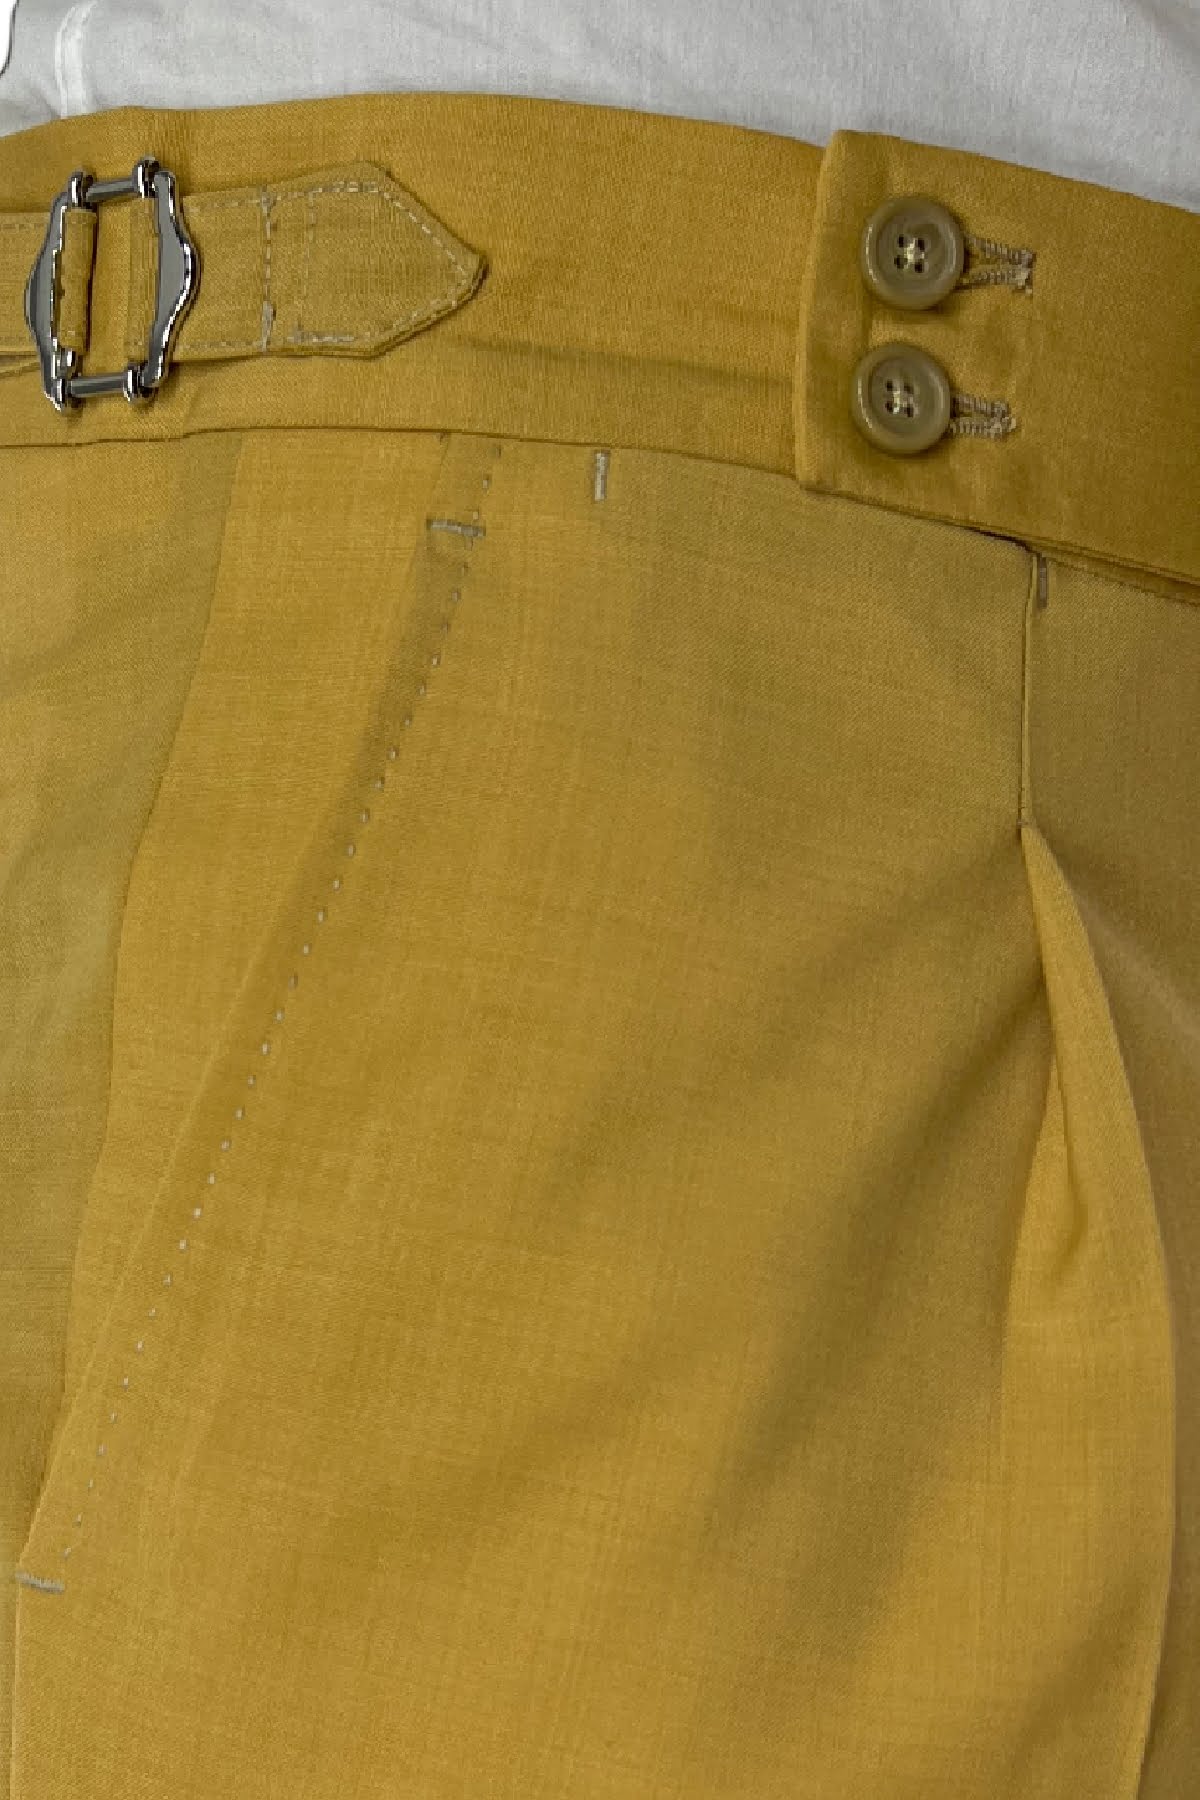 Abito uomo giallo con giacca doppiopetto e pantalone vita alta in fresco lana made in italy